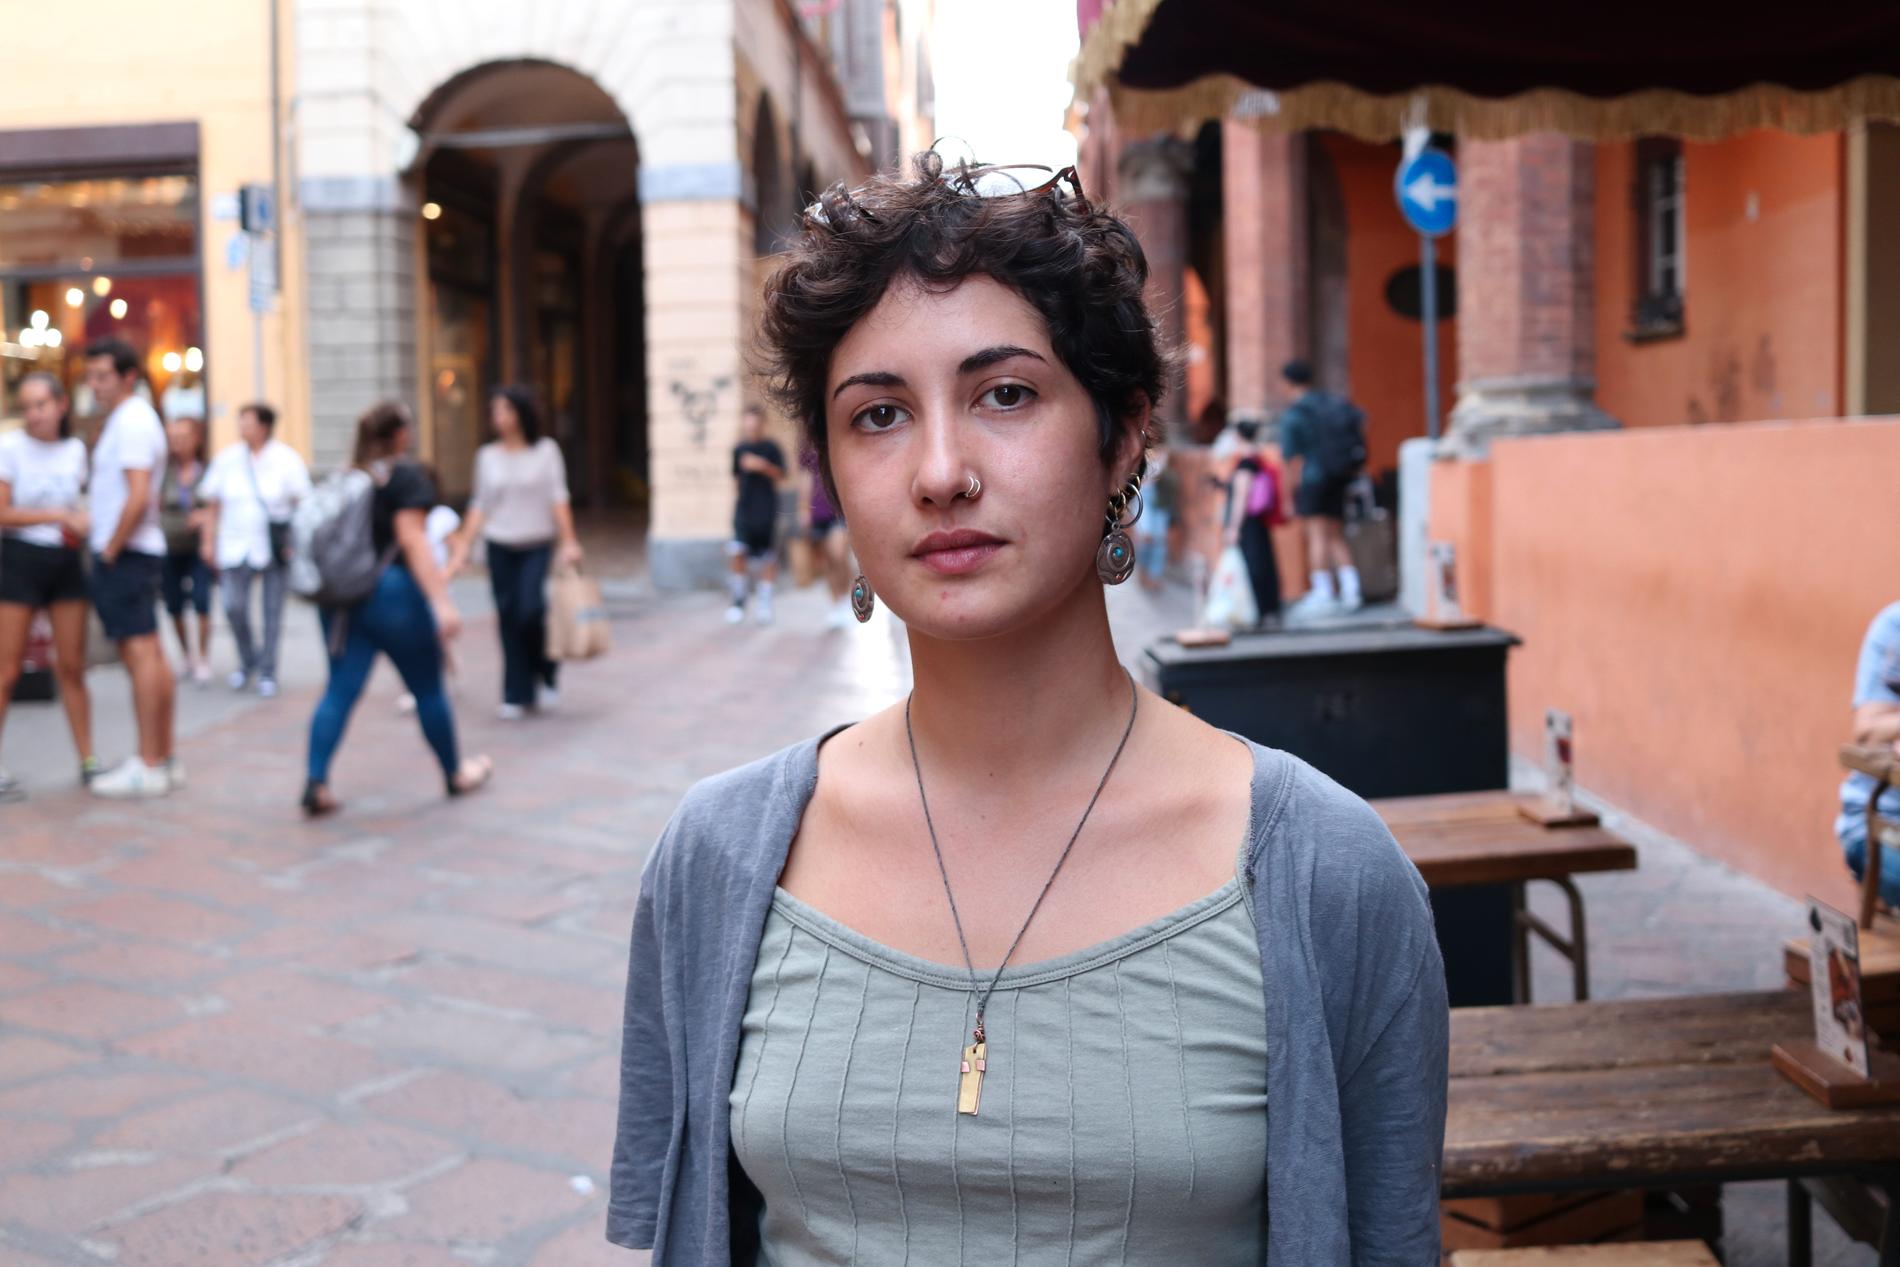 Dalila Pluchino studerar konsthistoria på universitetet i Bologna, ett av världens äldsta lärosäten. Hon oroas över vad som kommer att hända om Giorgia Meloni blir premiärminister.